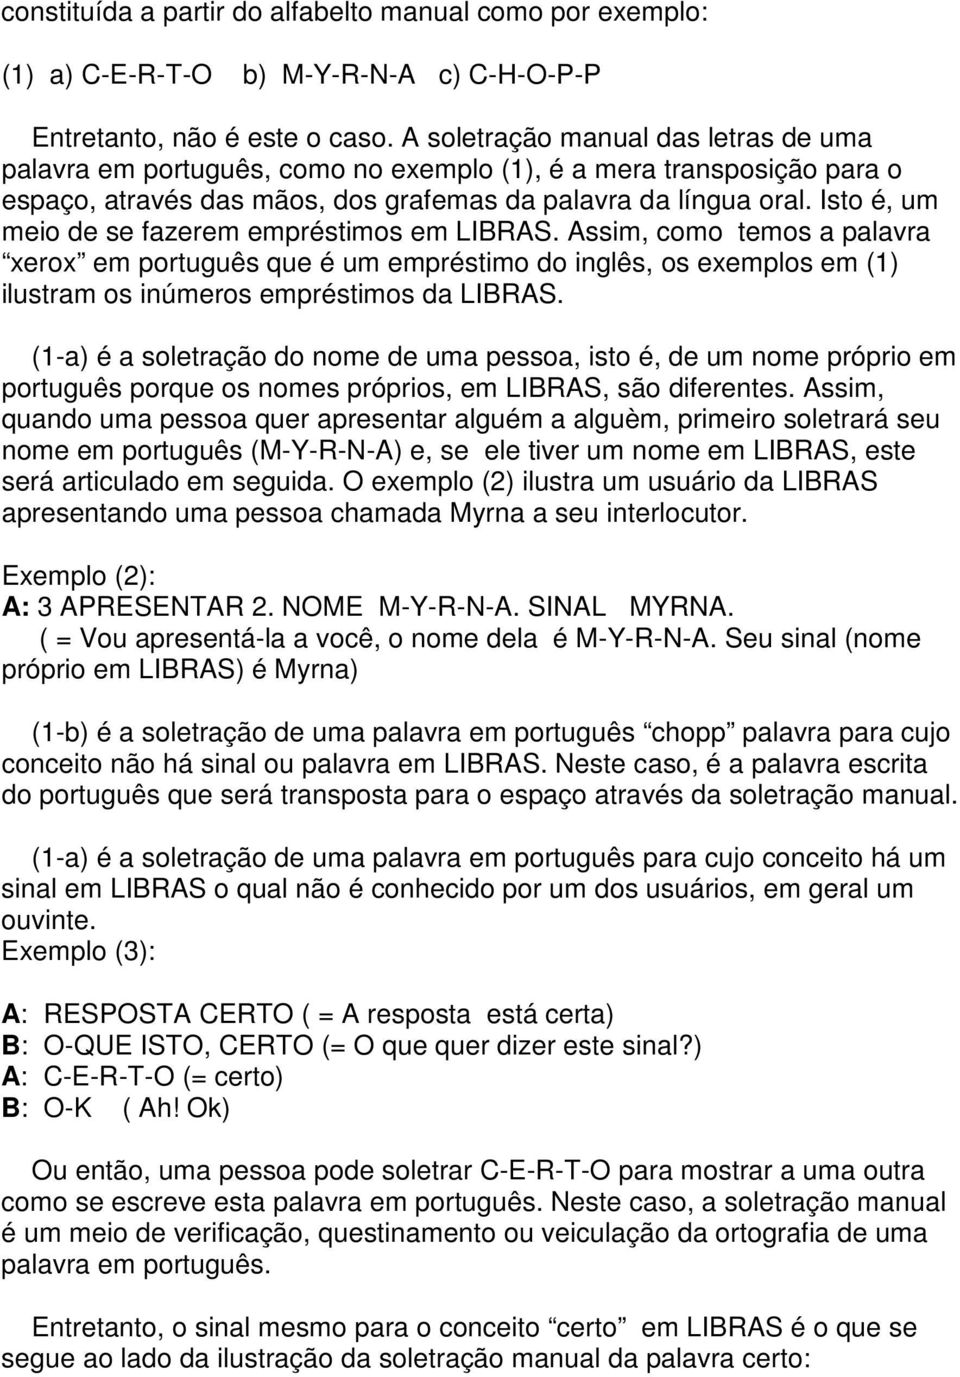 Isto é, um meio de se fazerem empréstimos em LIBRAS. Assim, como temos a palavra xerox em português que é um empréstimo do inglês, os exemplos em (1) ilustram os inúmeros empréstimos da LIBRAS.